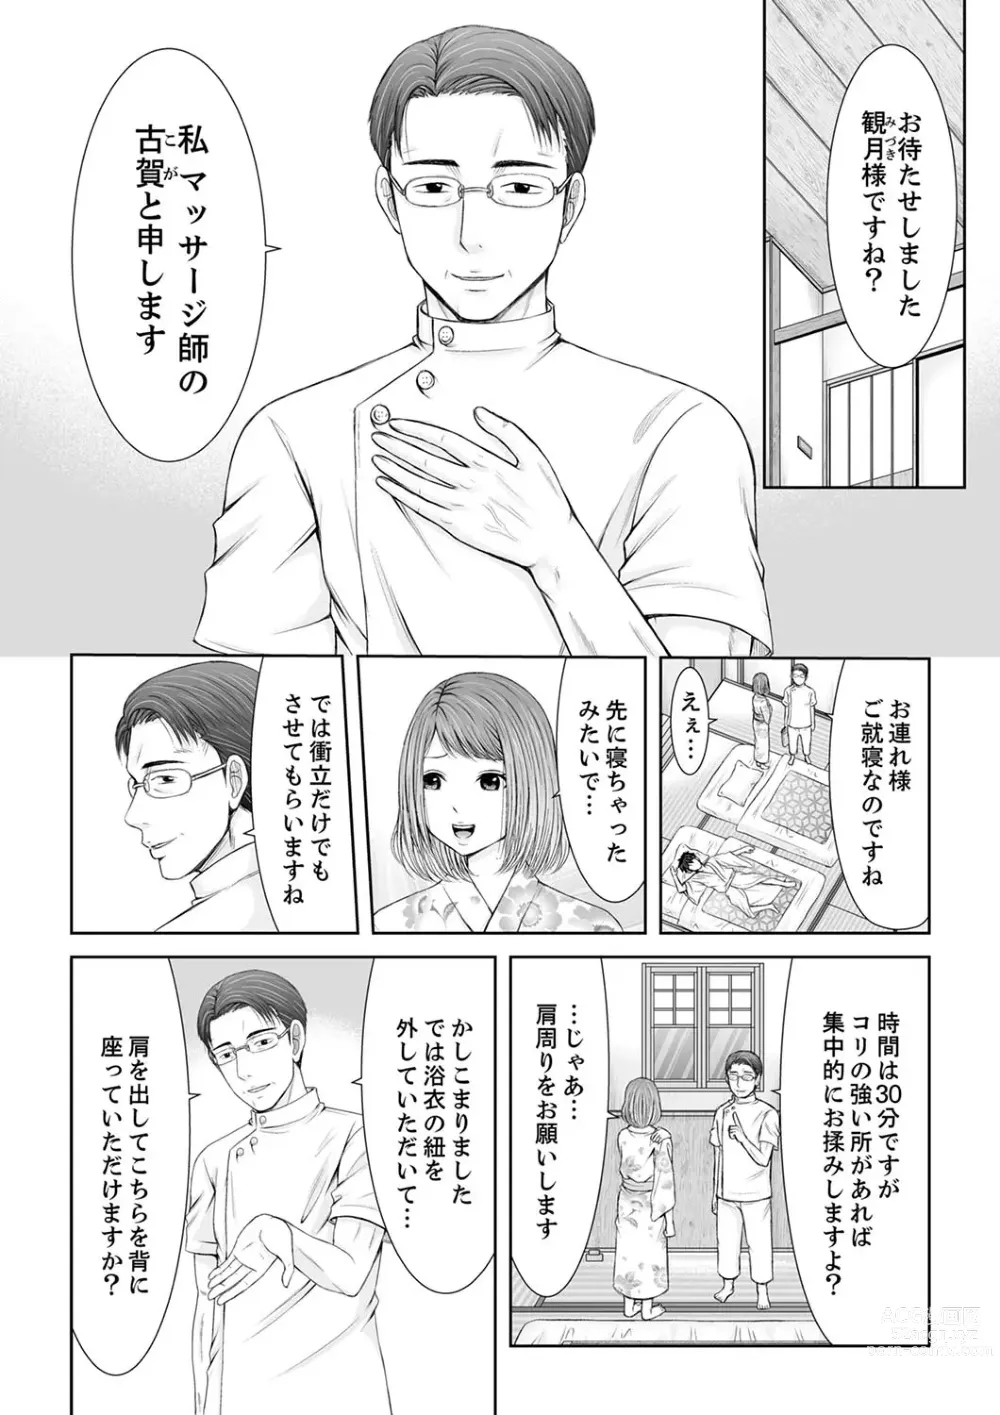 Page 9 of manga 整体師にジらされ続けた妻～夫には言えない濡れイキマッサージ【デラックス版】